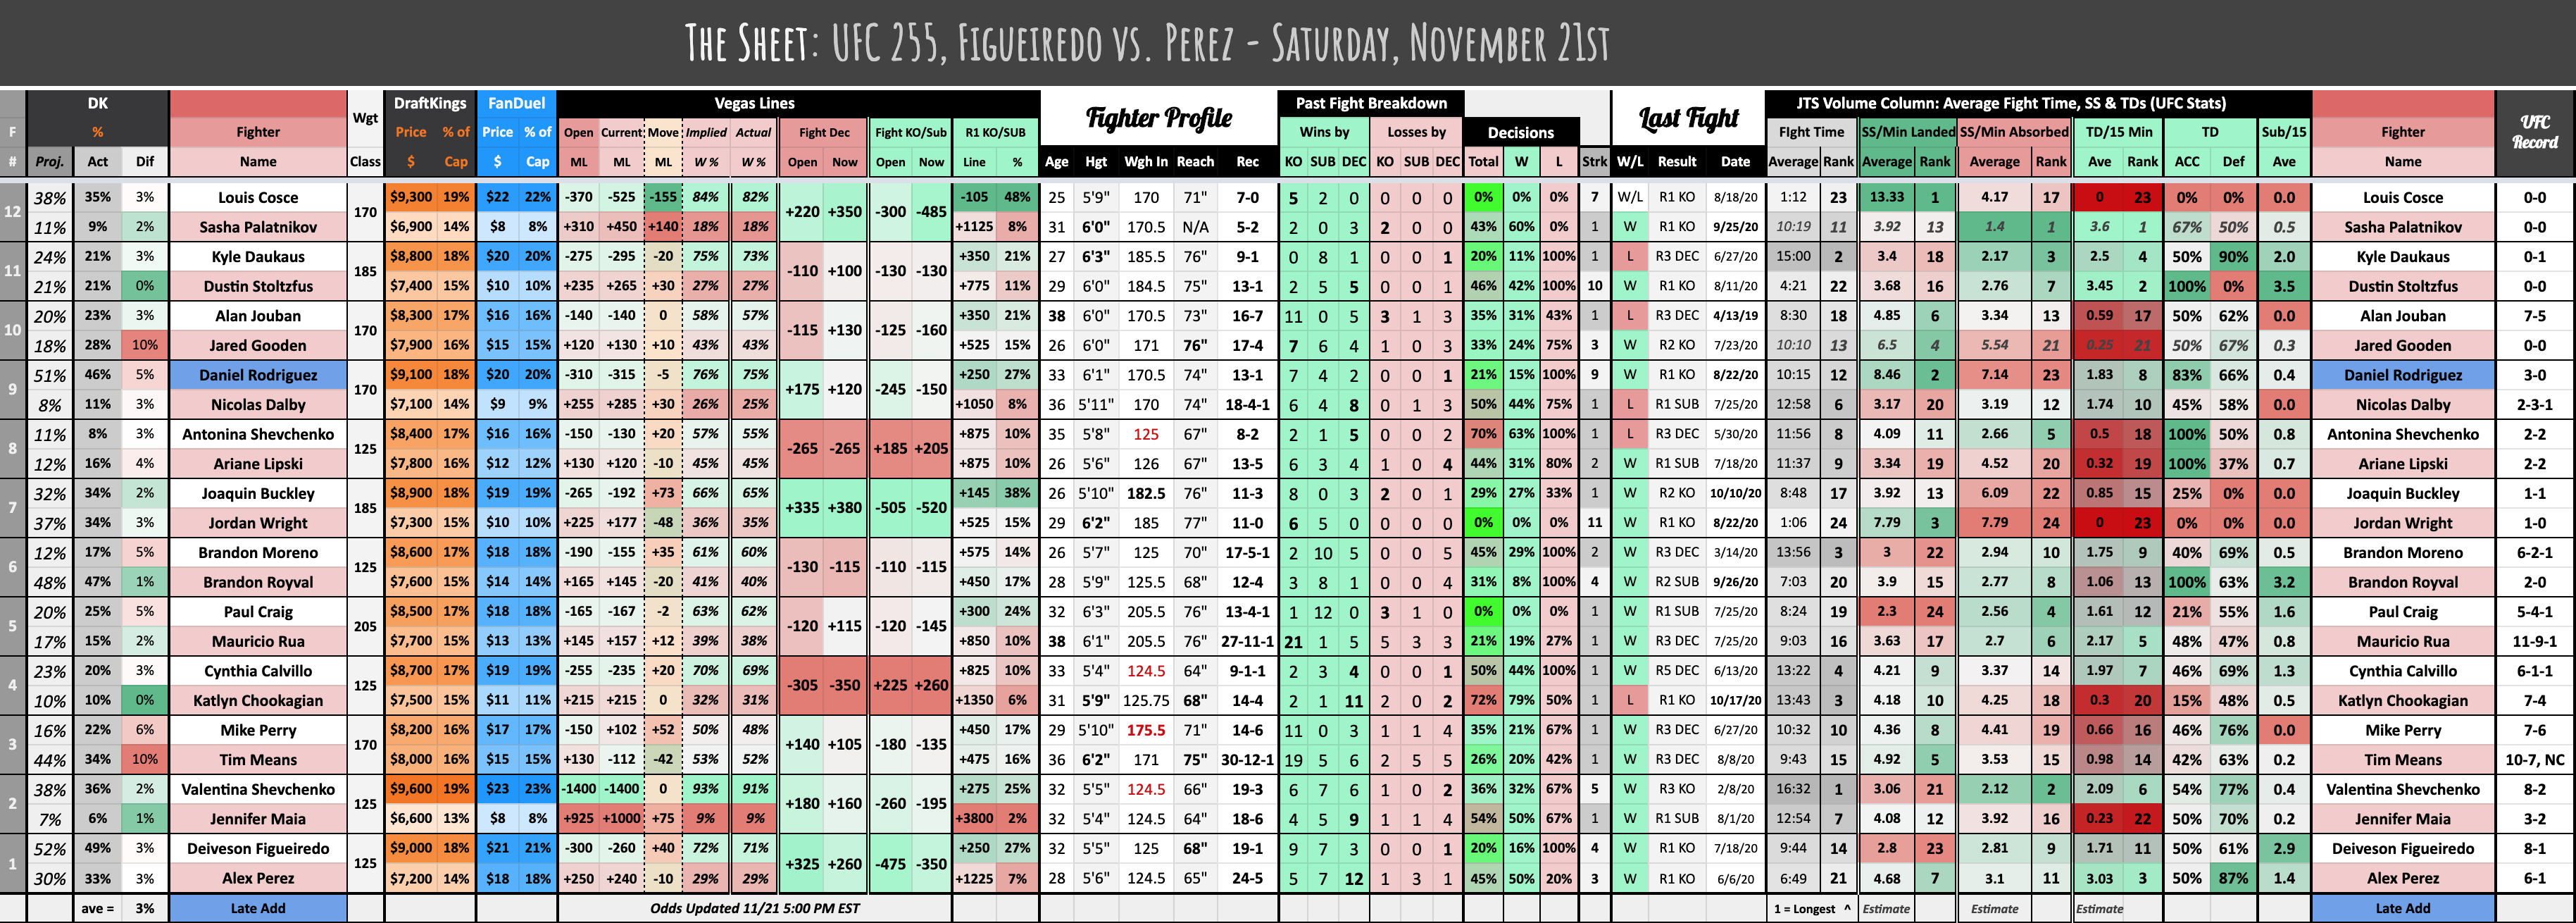 The Sheet: UFC 255, Figueiredo vs. Perez - Saturday, November 21st